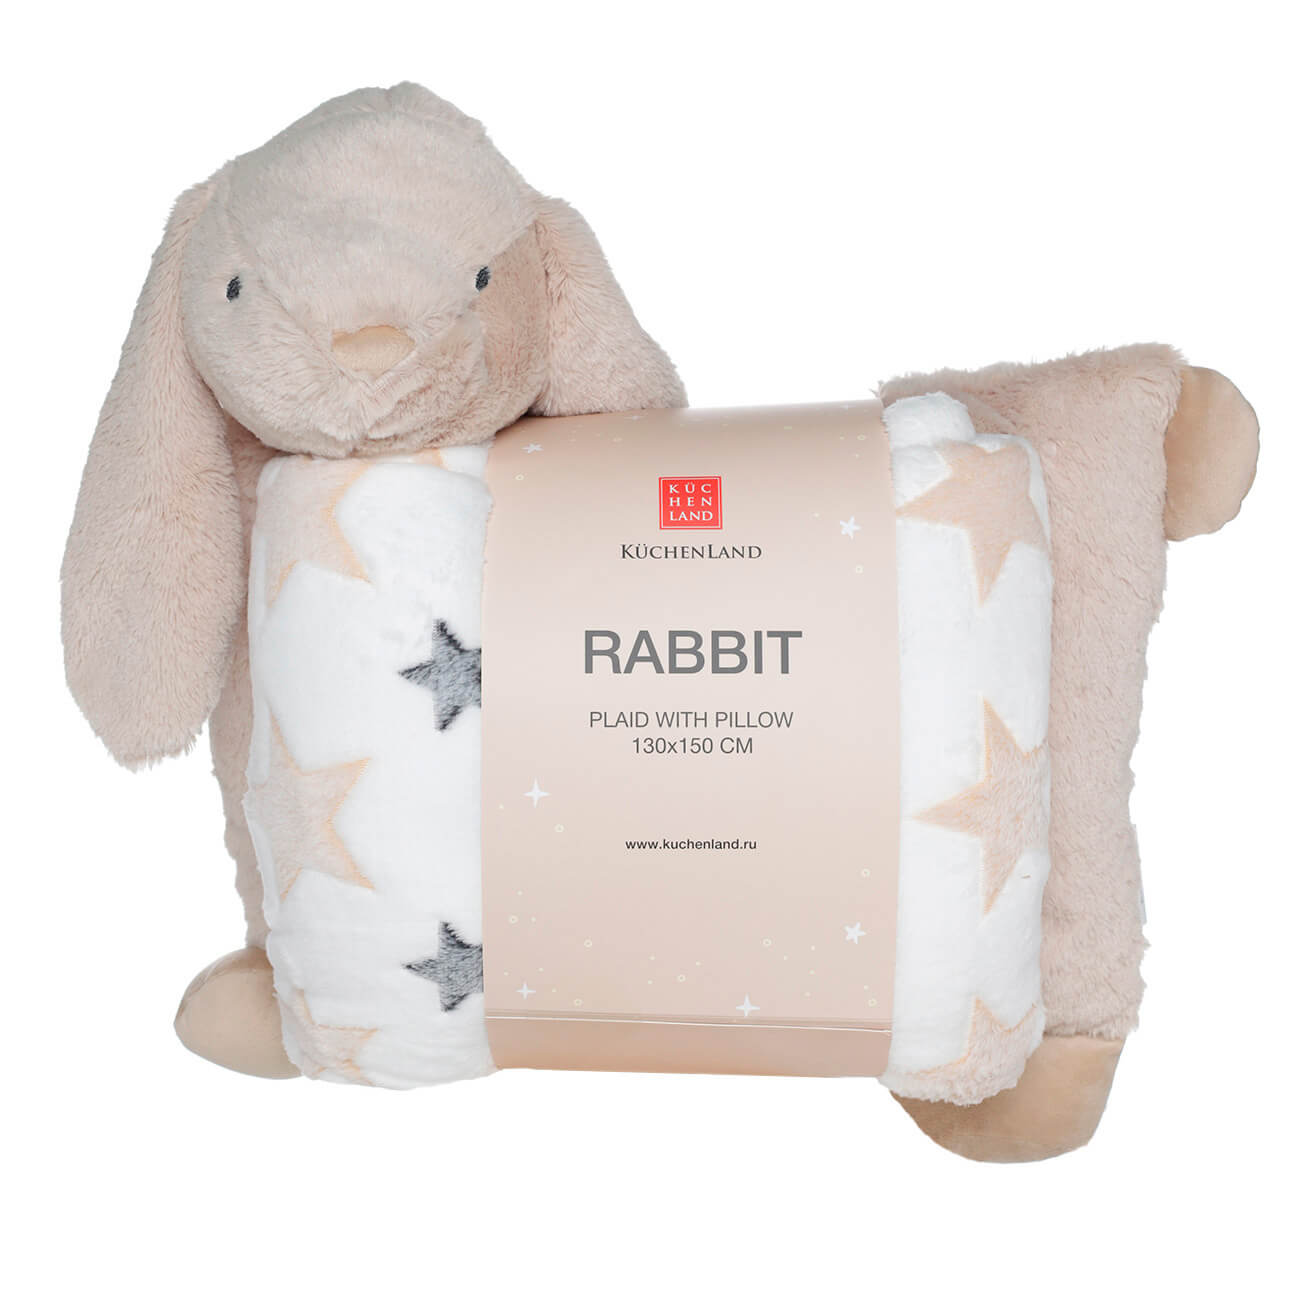 Плед с подушкой, 130х150 см, флис/плюш, бежевый, Зайка, Rabbit мягкая игрушка зайка снежок с длинными ушами в шарфе 20 см